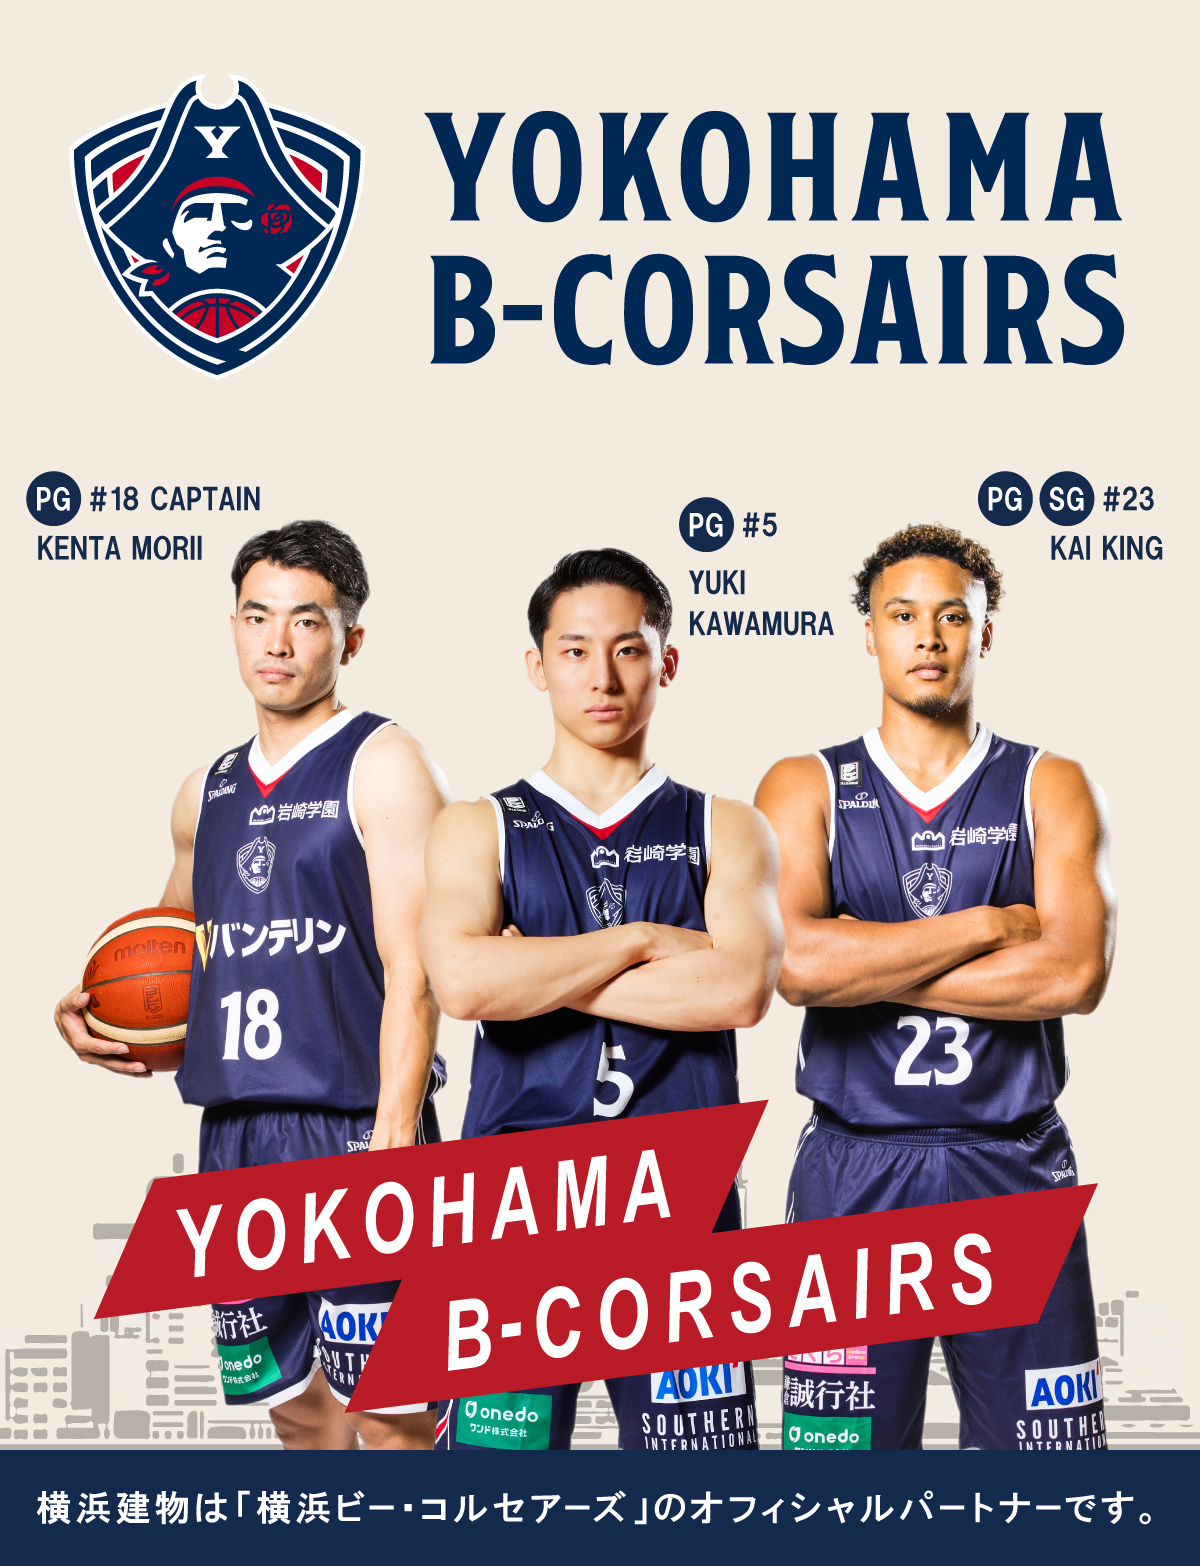 横浜建物は地元横浜のプロバスケットボールチーム「横浜ビー・コルセアーズ」のオフィシャルパートナーです。